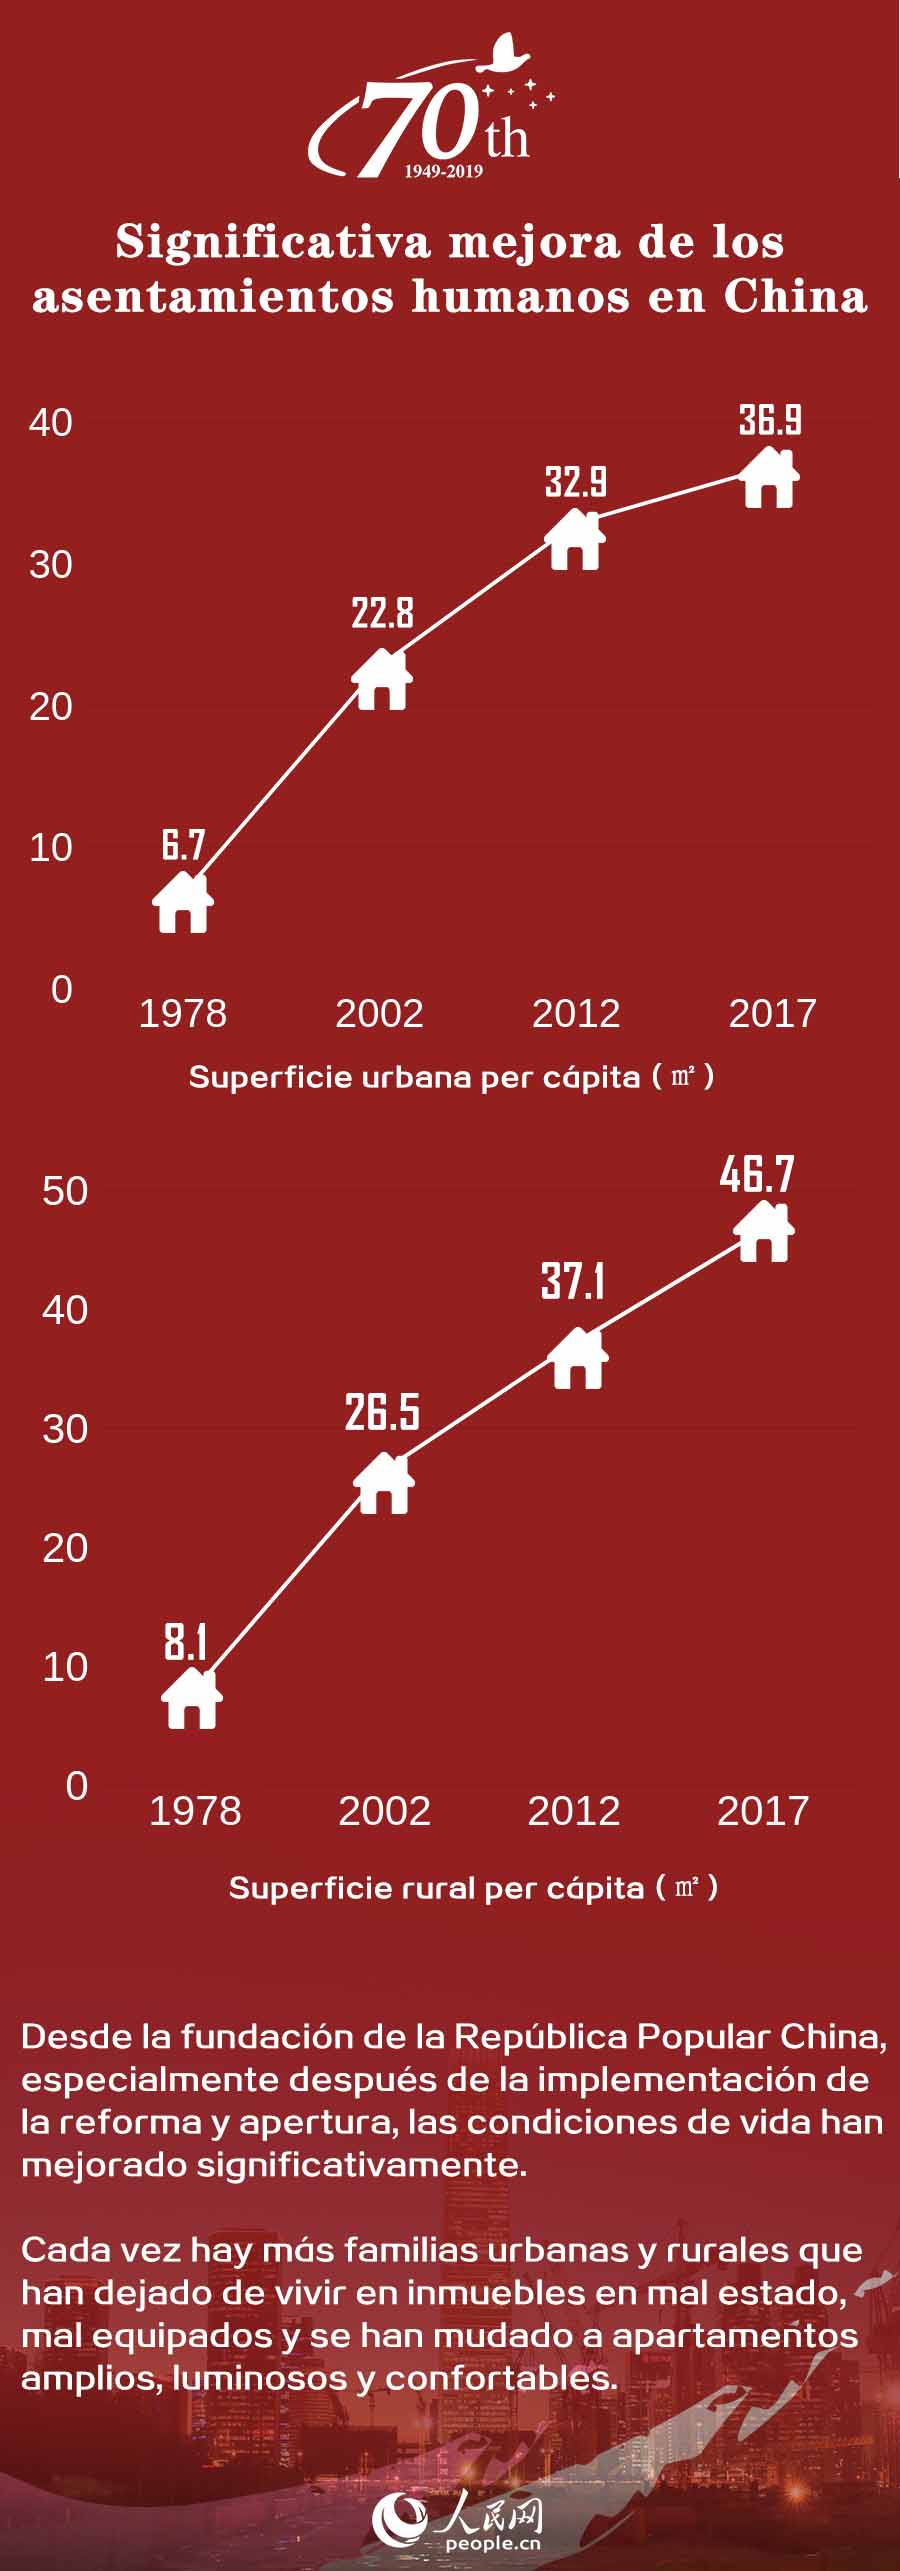 China en 70 años: significativa mejora de los asentamientos humanos en China